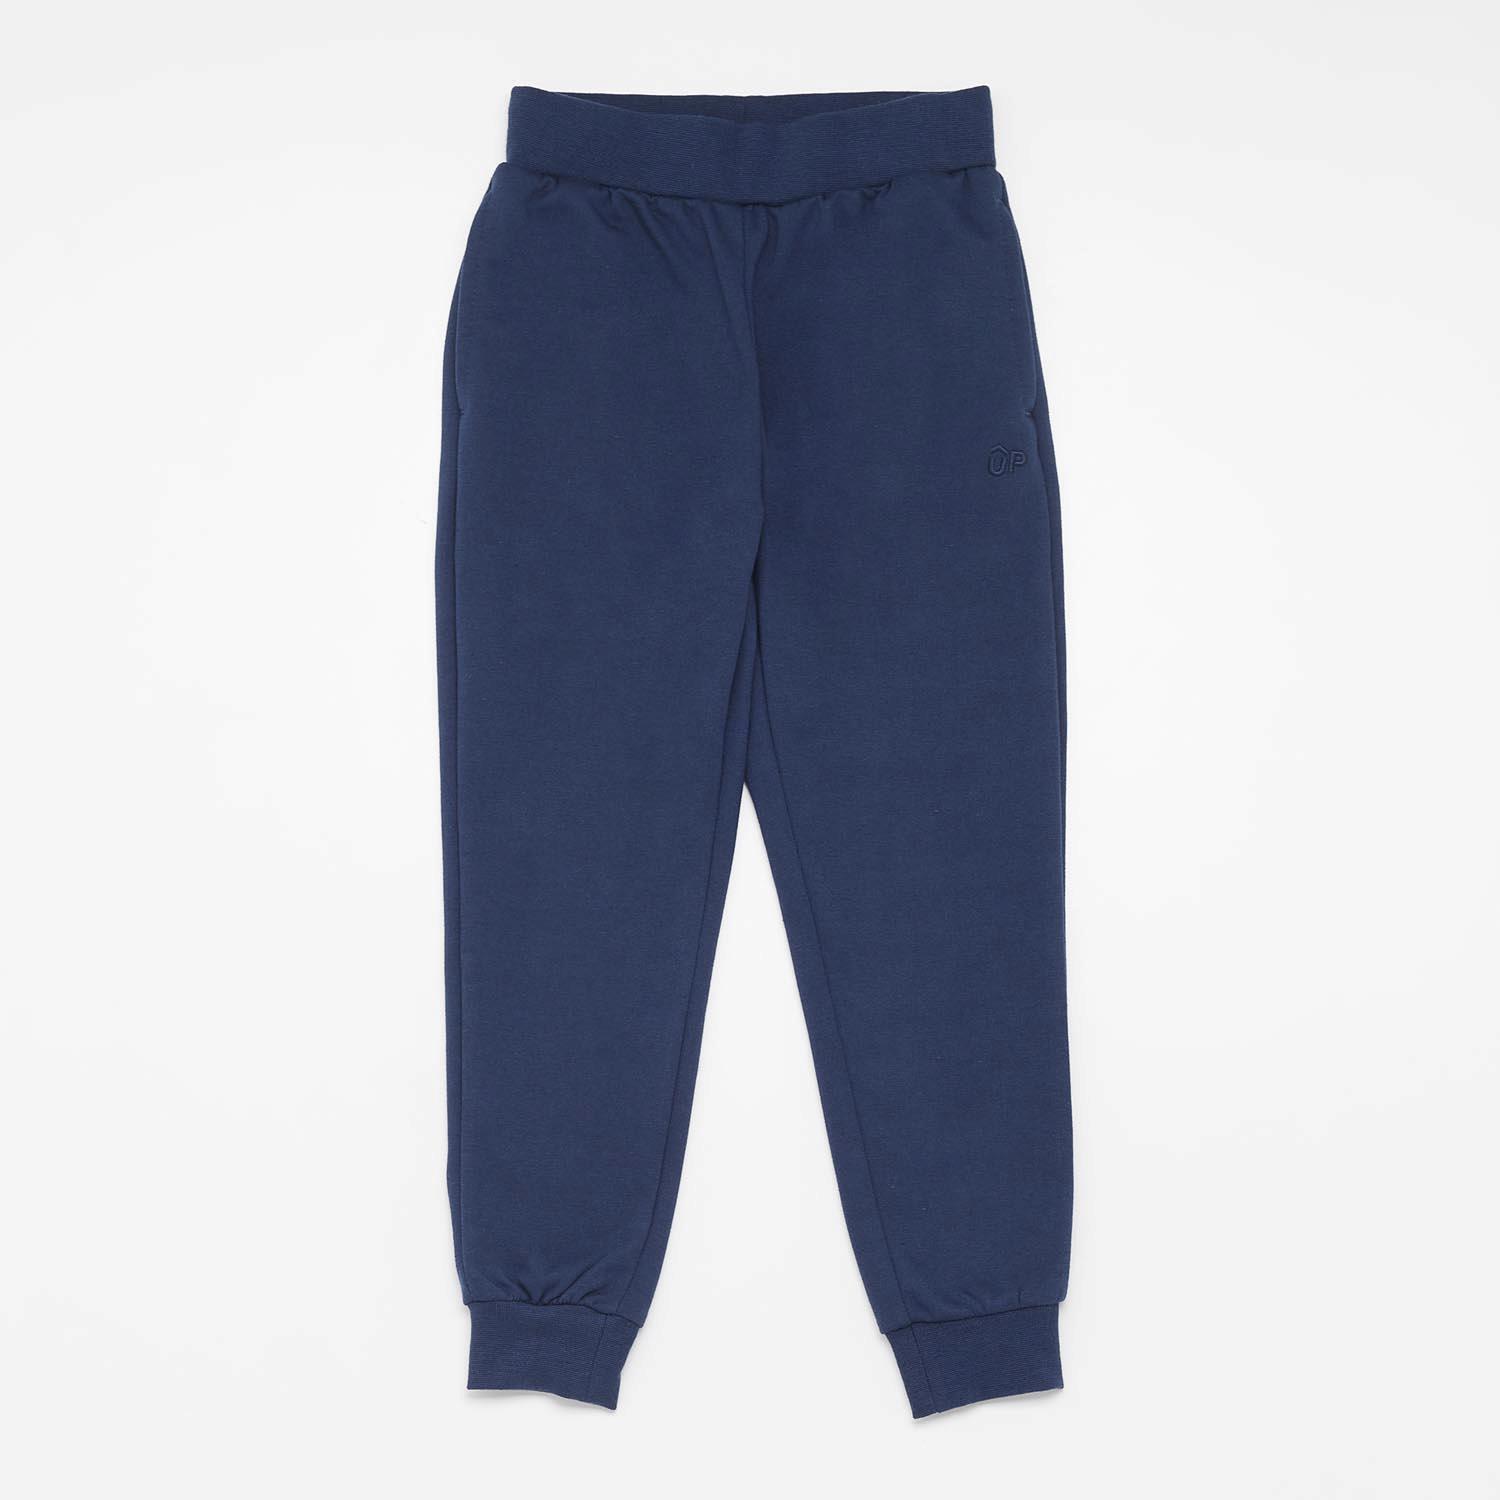 Up Basic - Bleu marine - Pantalon de survêtement fille sports taille 8